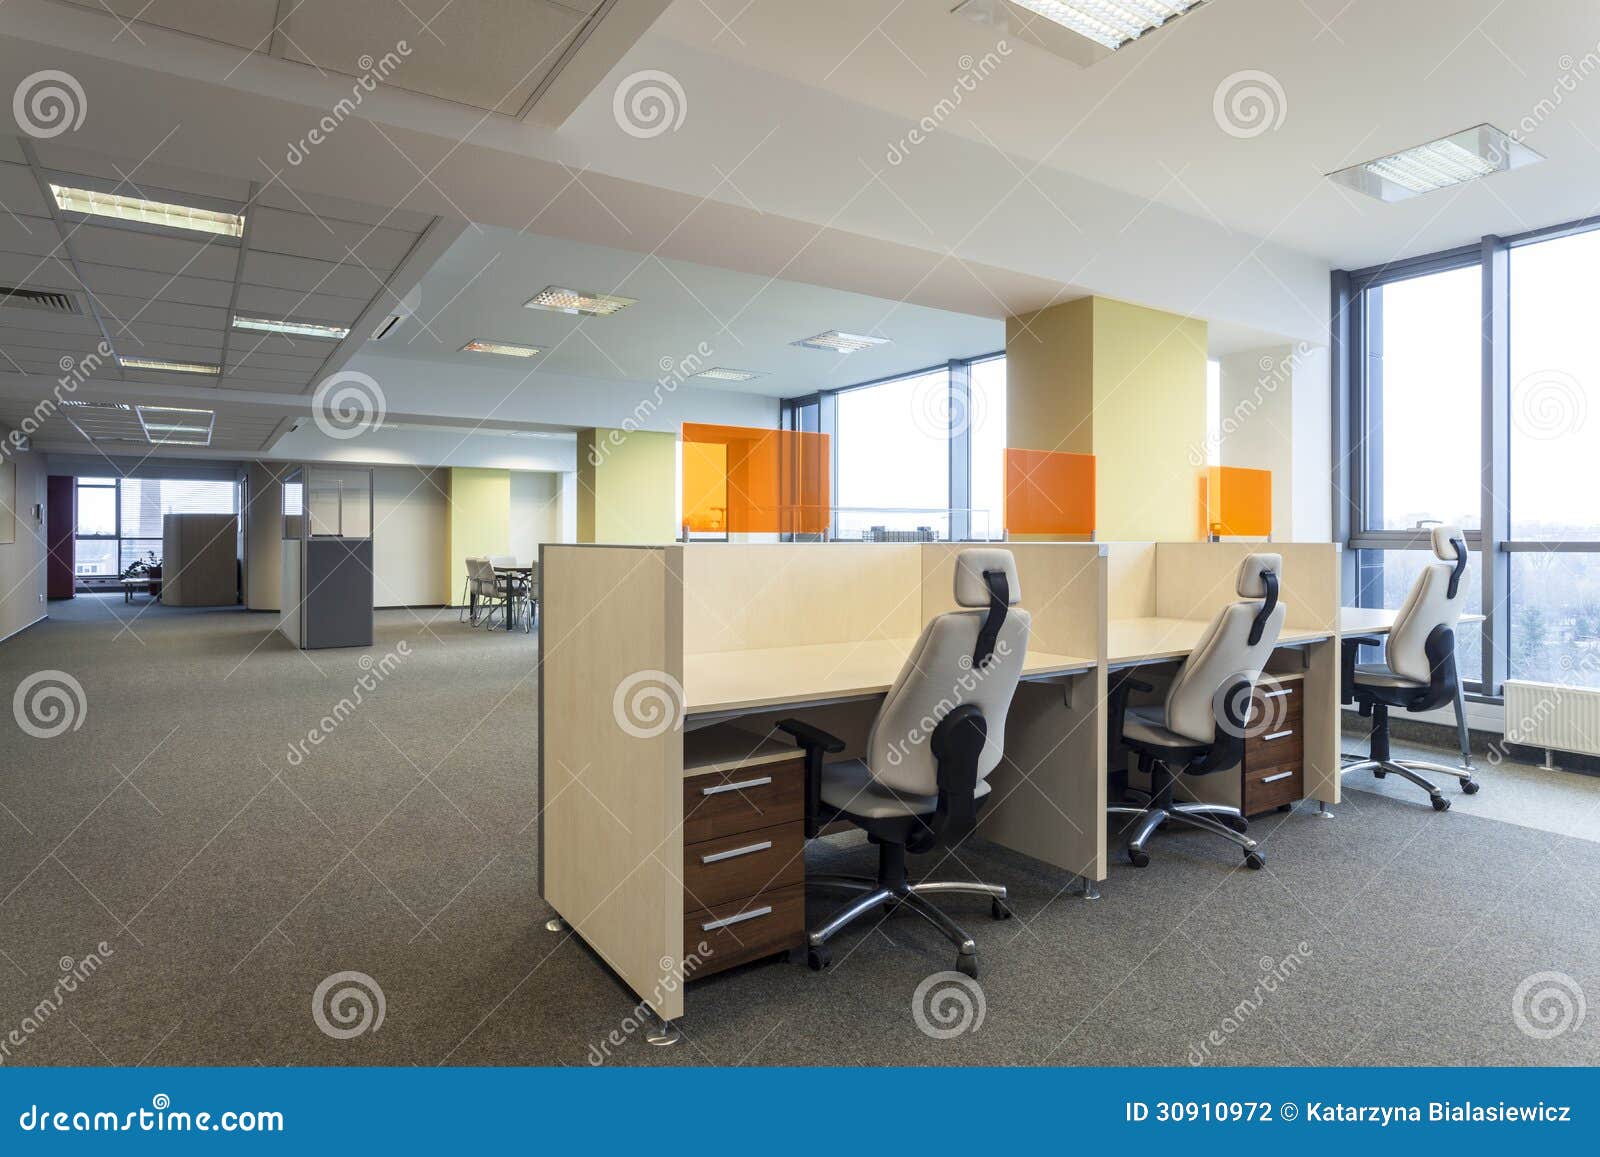 empty office desks modern interior 30910972